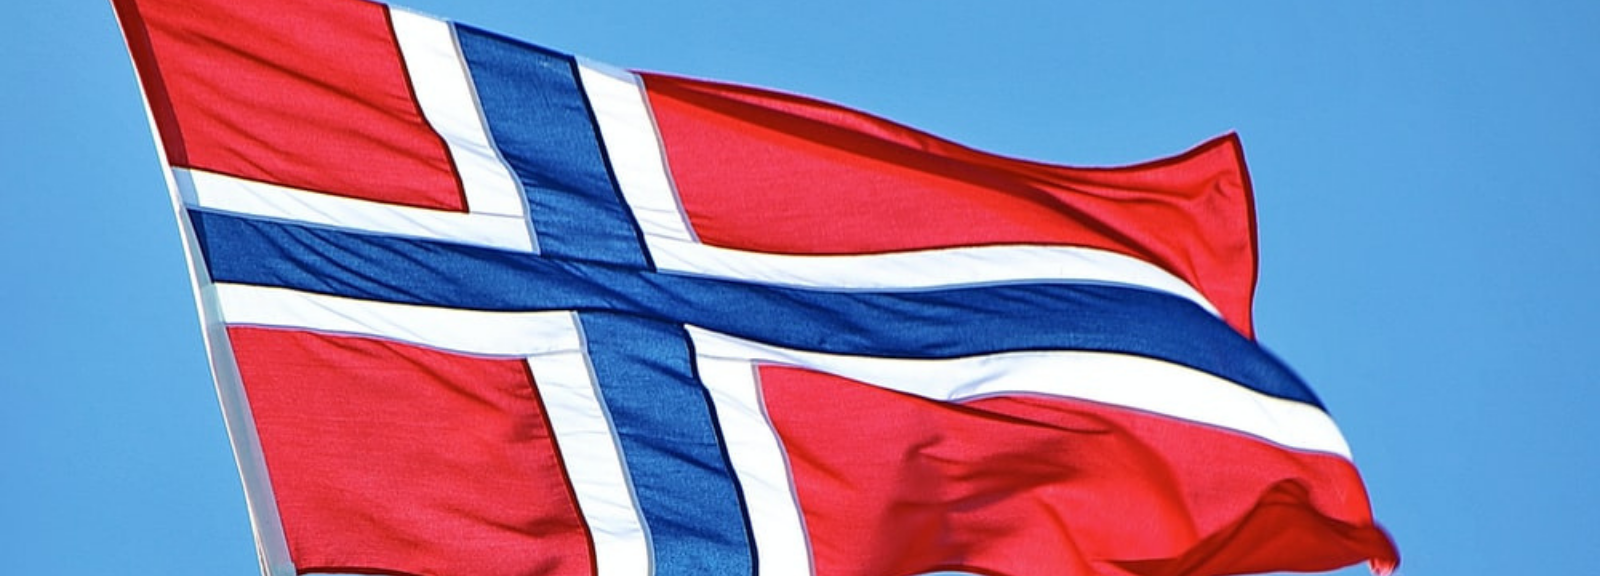 Norwegian flag on a pole.